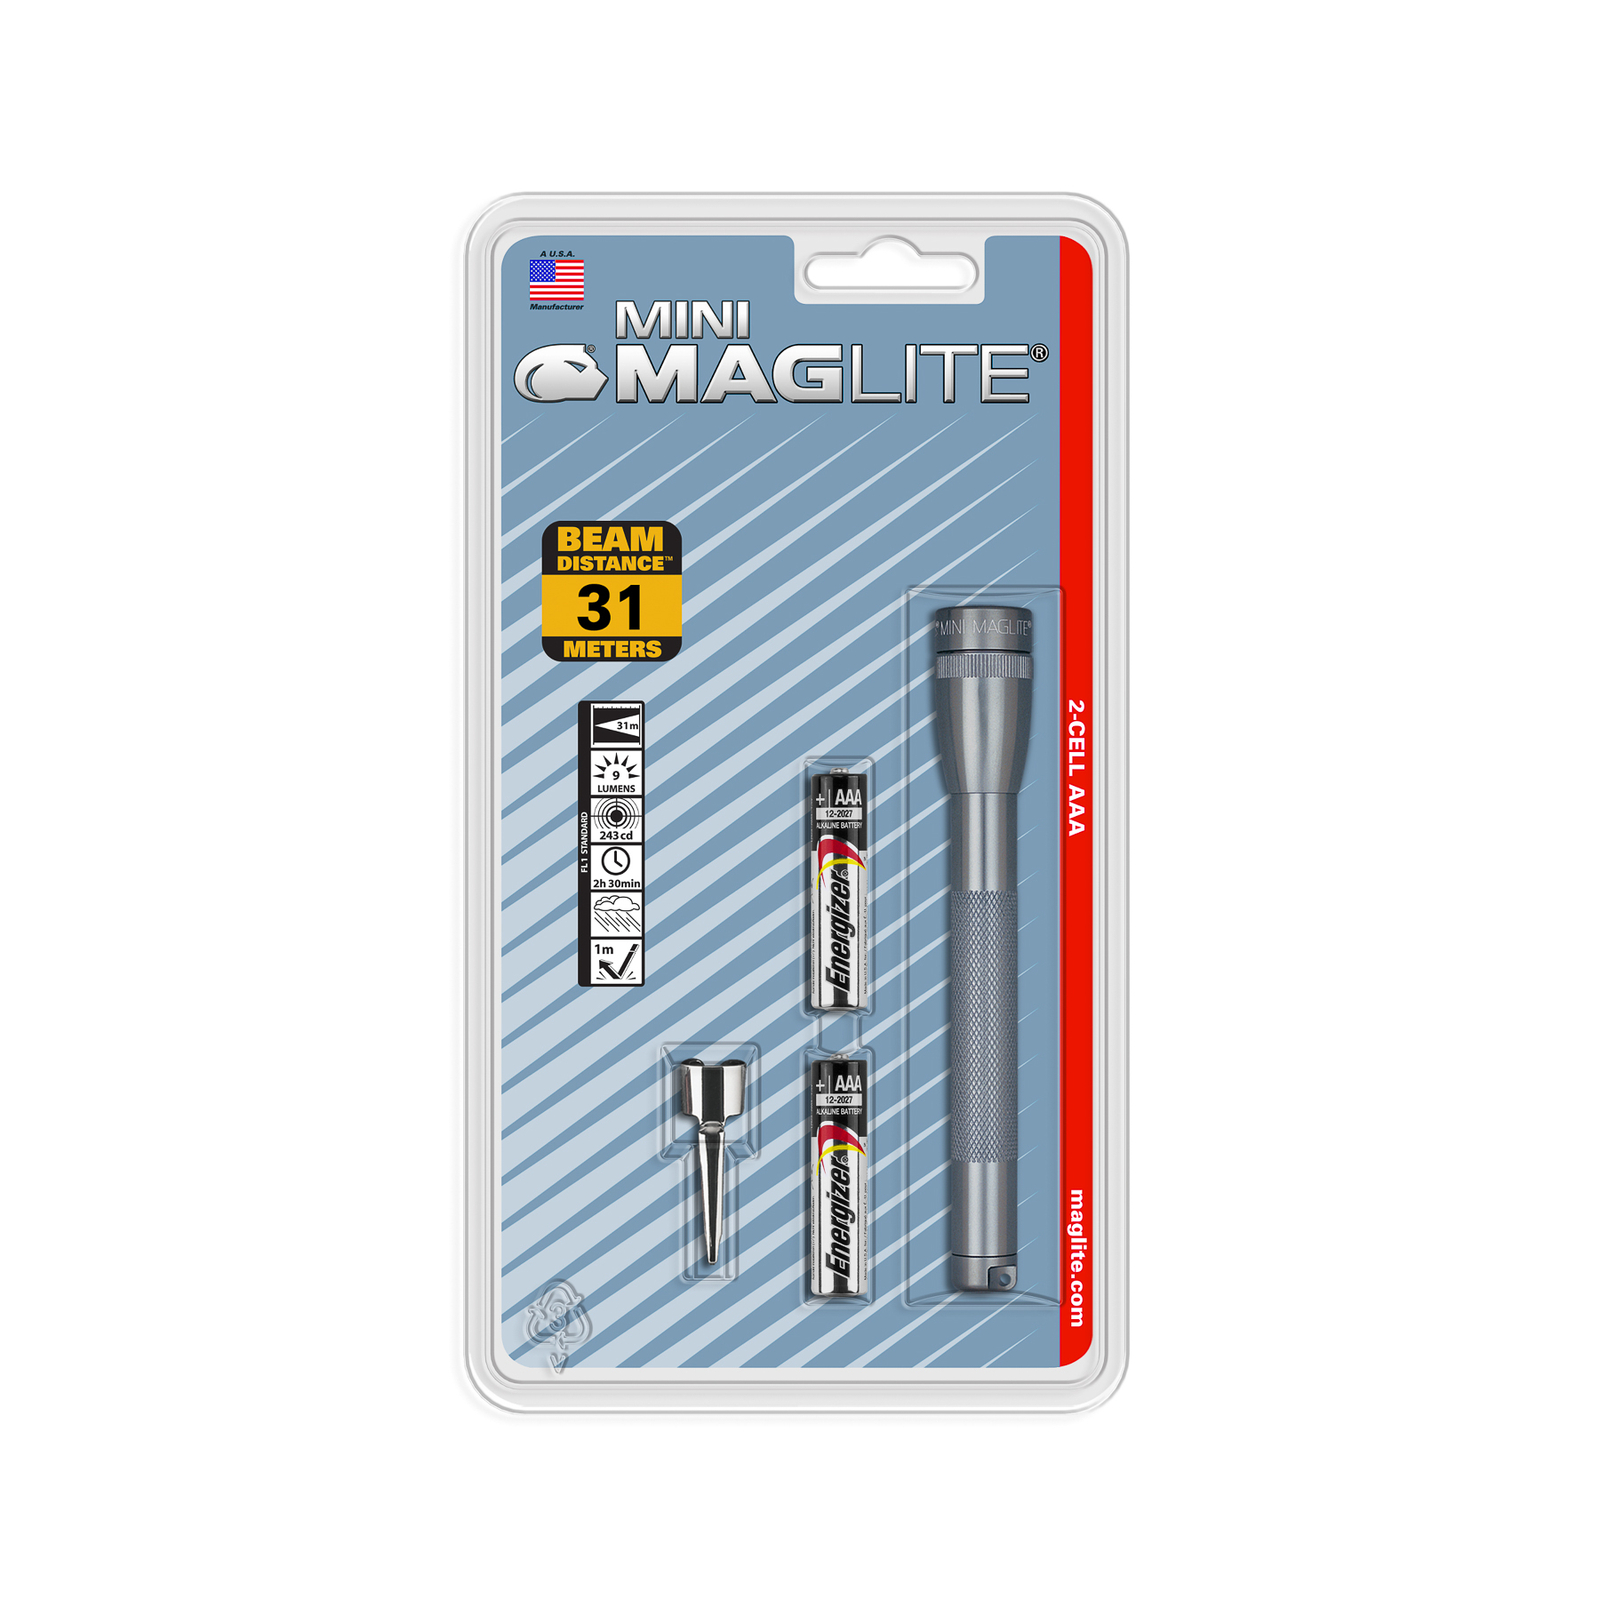 Maglite Xenon taskulamppu Mini, 2-kennoinen AAA, harmaa